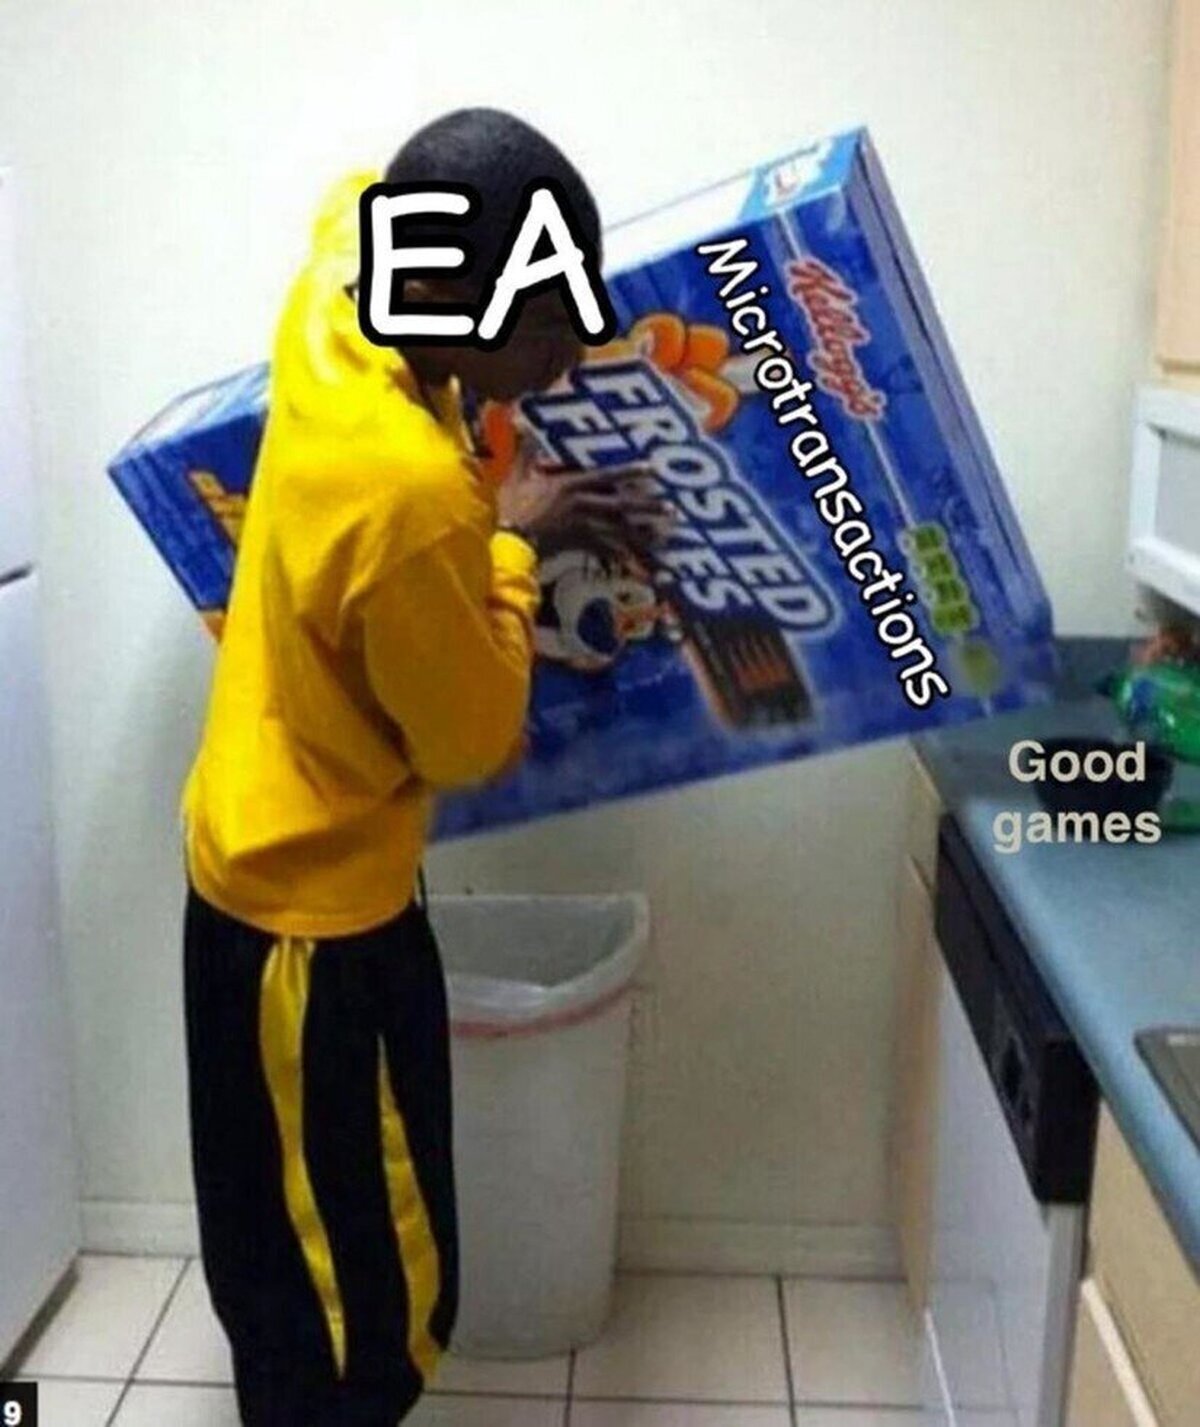 EA in a nutshell